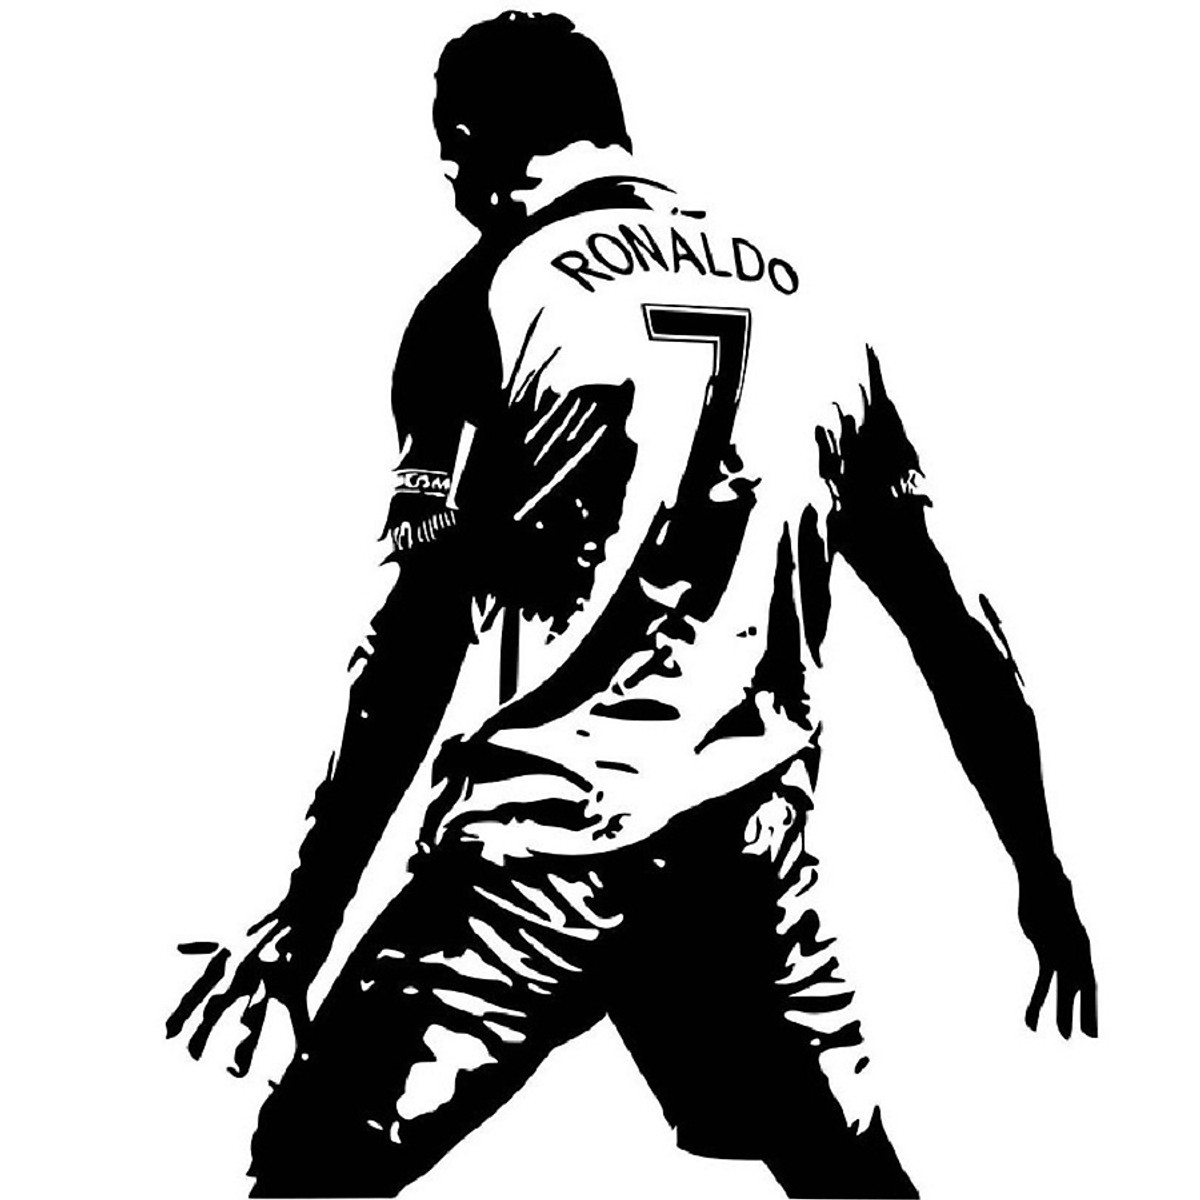 Ảnh Ronaldo đen trắng nay đã được tái hiện trên decal dán tường! Hãy trang trí tổ ấm của bạn với hình ảnh siêu sao bóng đá nổi tiếng để mang đến một môi trường sống đầy năng lượng và động lực. Với công nghệ in ấn chất lượng cao, hình ảnh Ronaldo sẽ giúp nâng tầm không gian sống của bạn.